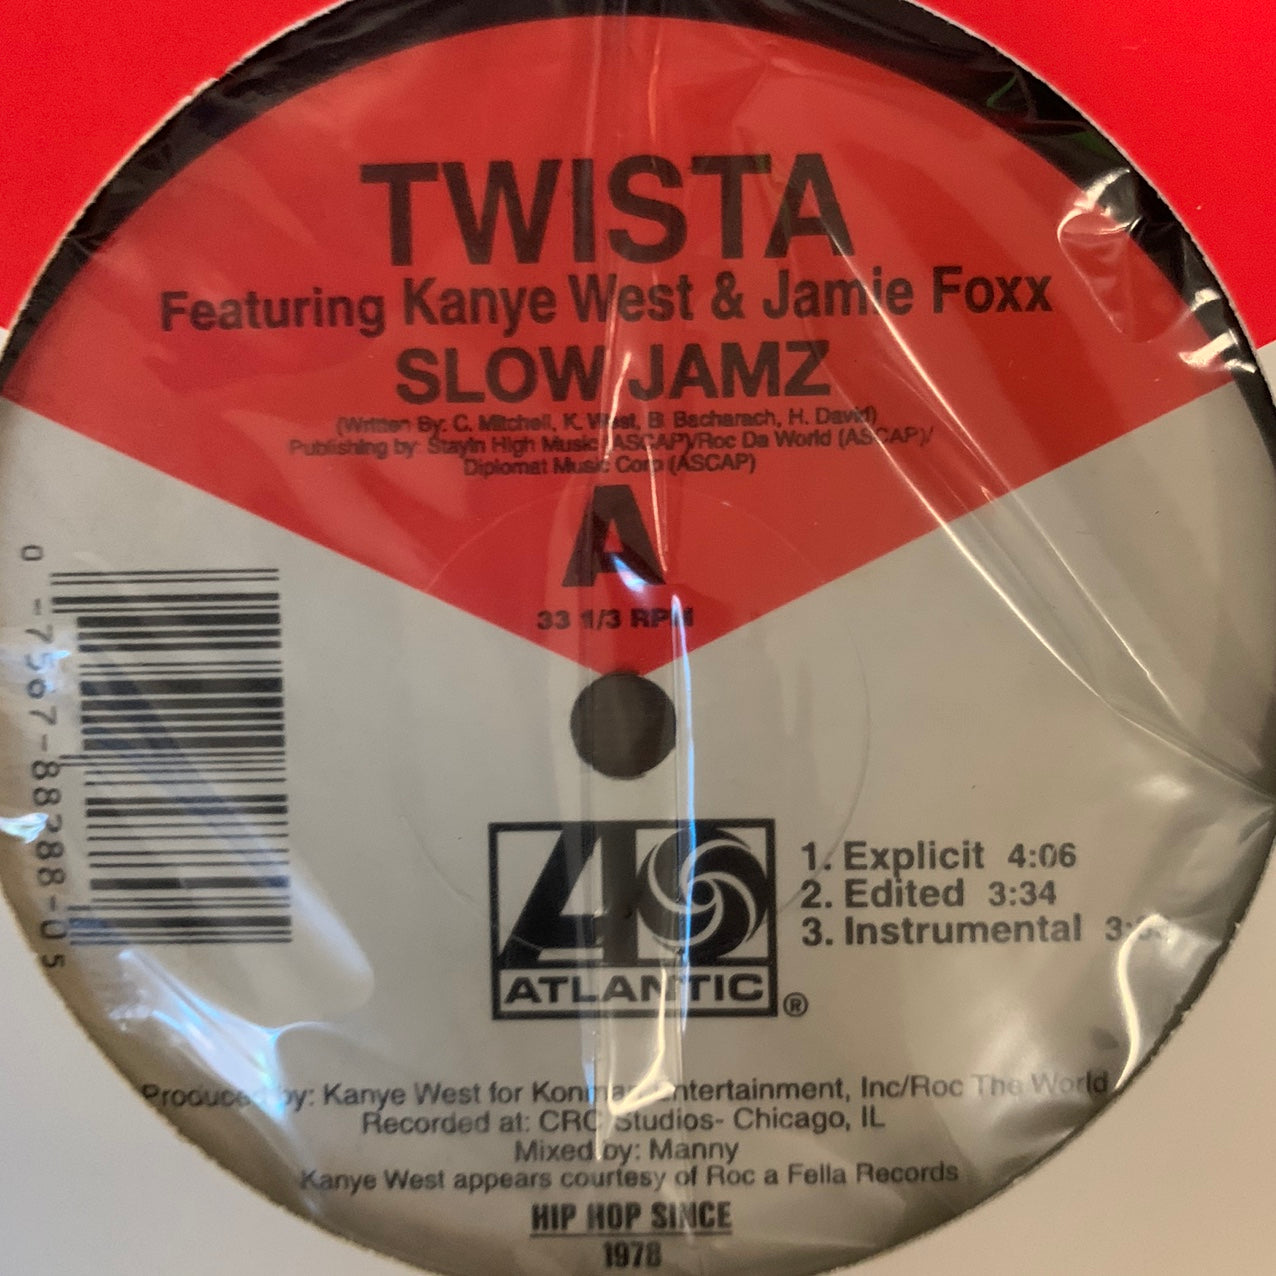 Twista Feat Kanye West “Slow Jamz” 6 Version 12inch Vinyl